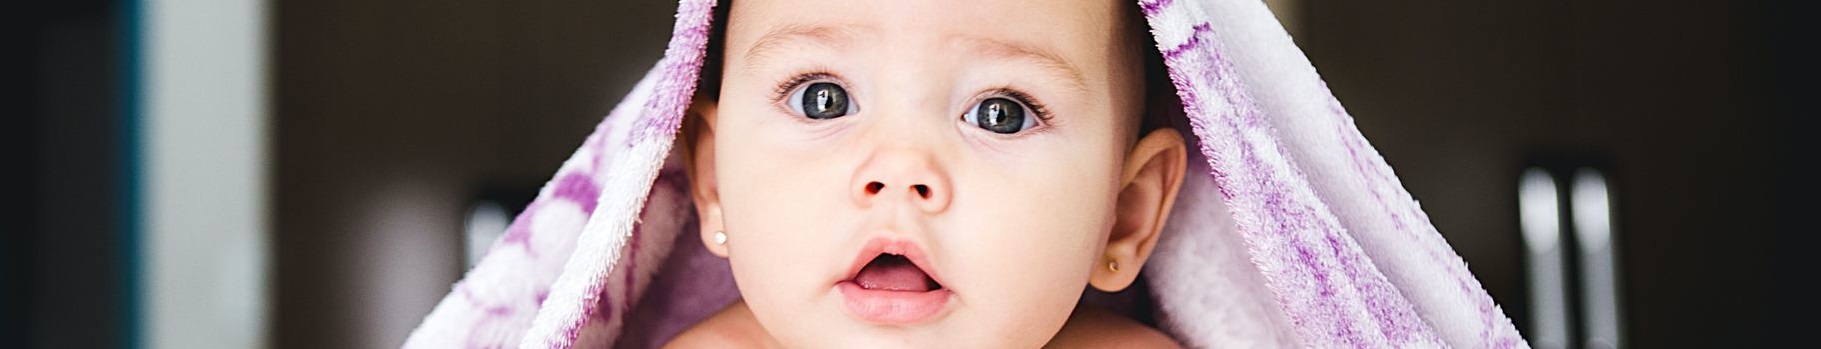 Kosmetyki do pielęgnacji niemowląt – jak wybrać?